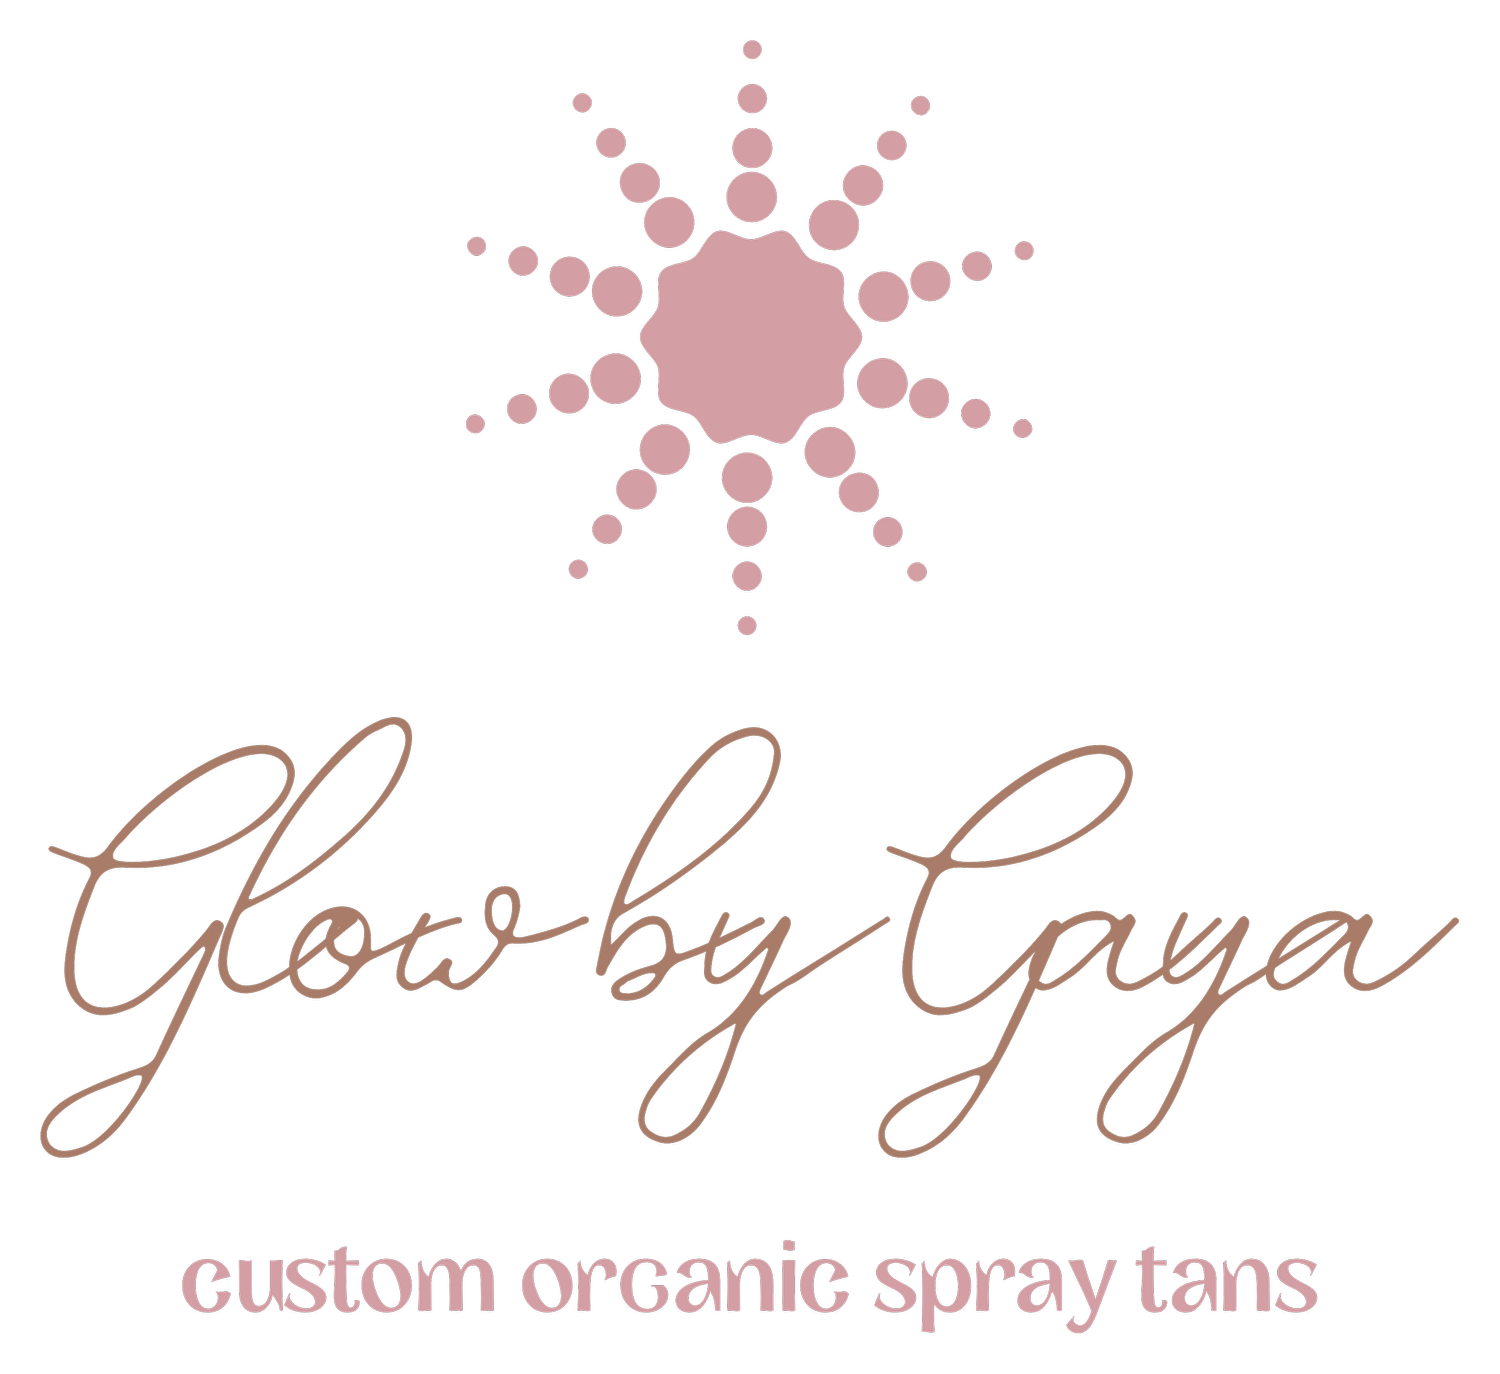 Glow By Gaya - Custom Organic Spray Tans